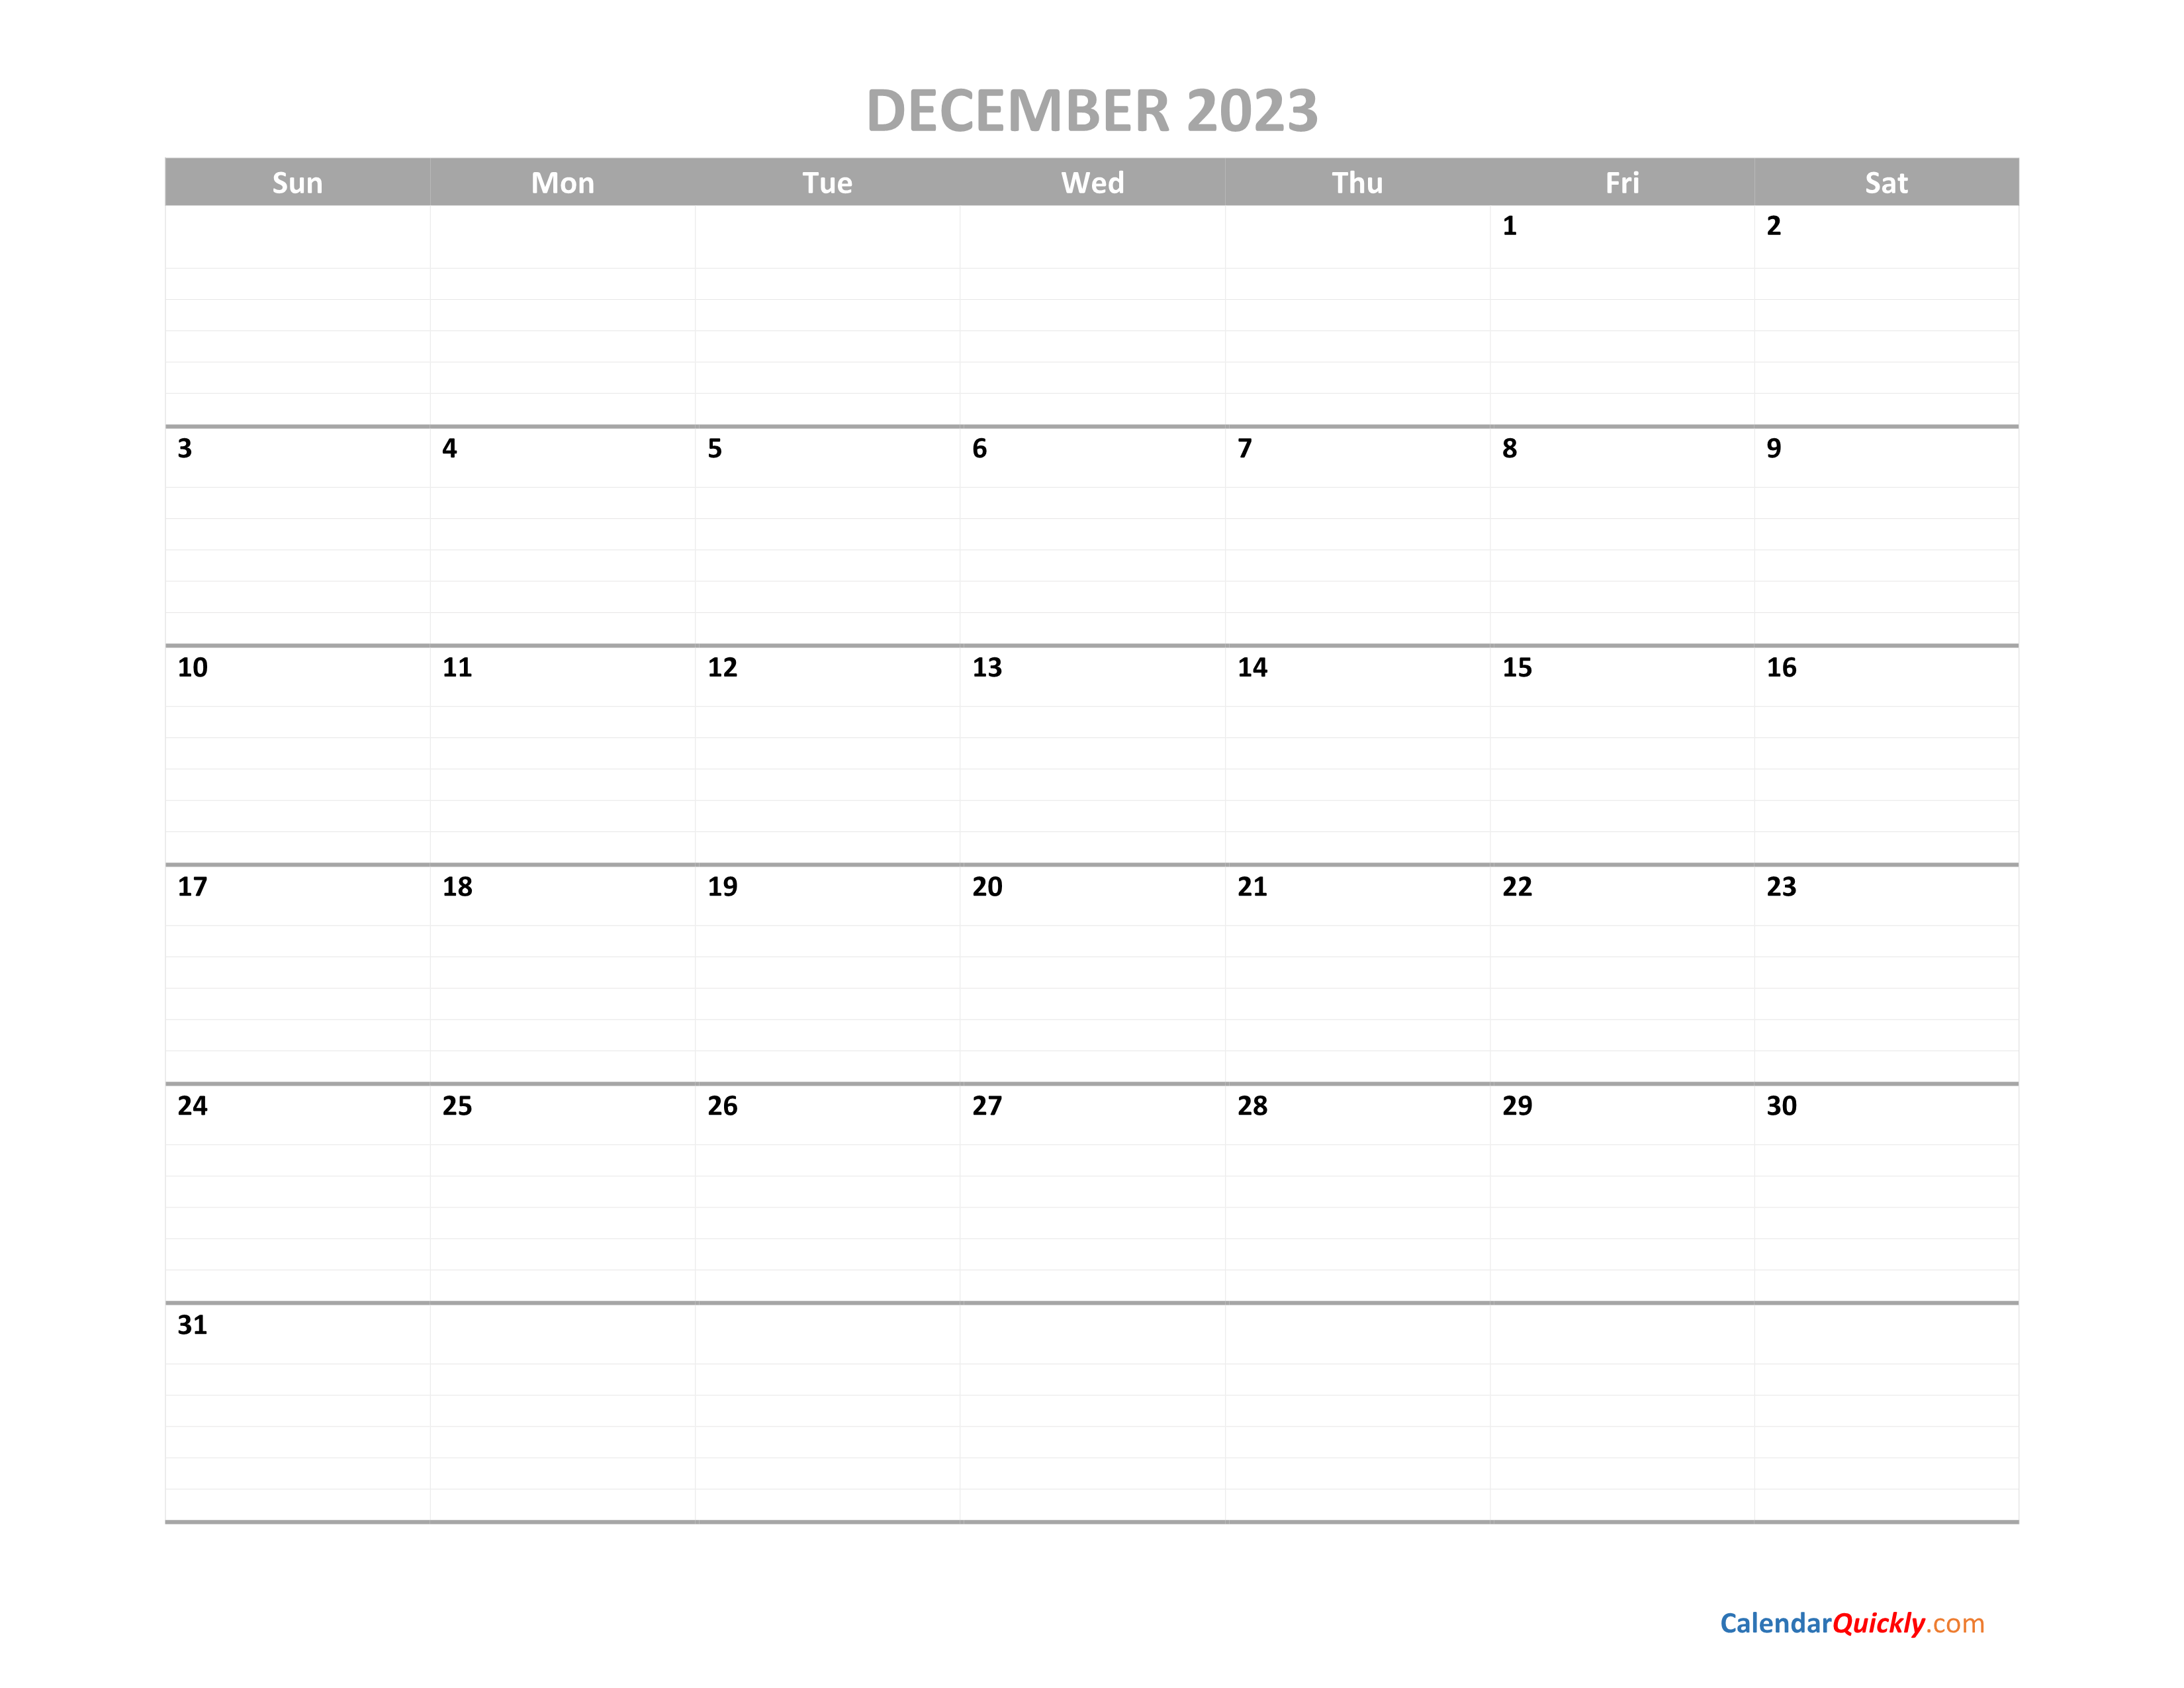 December Calendar 2023 Printable Calendar Quickly